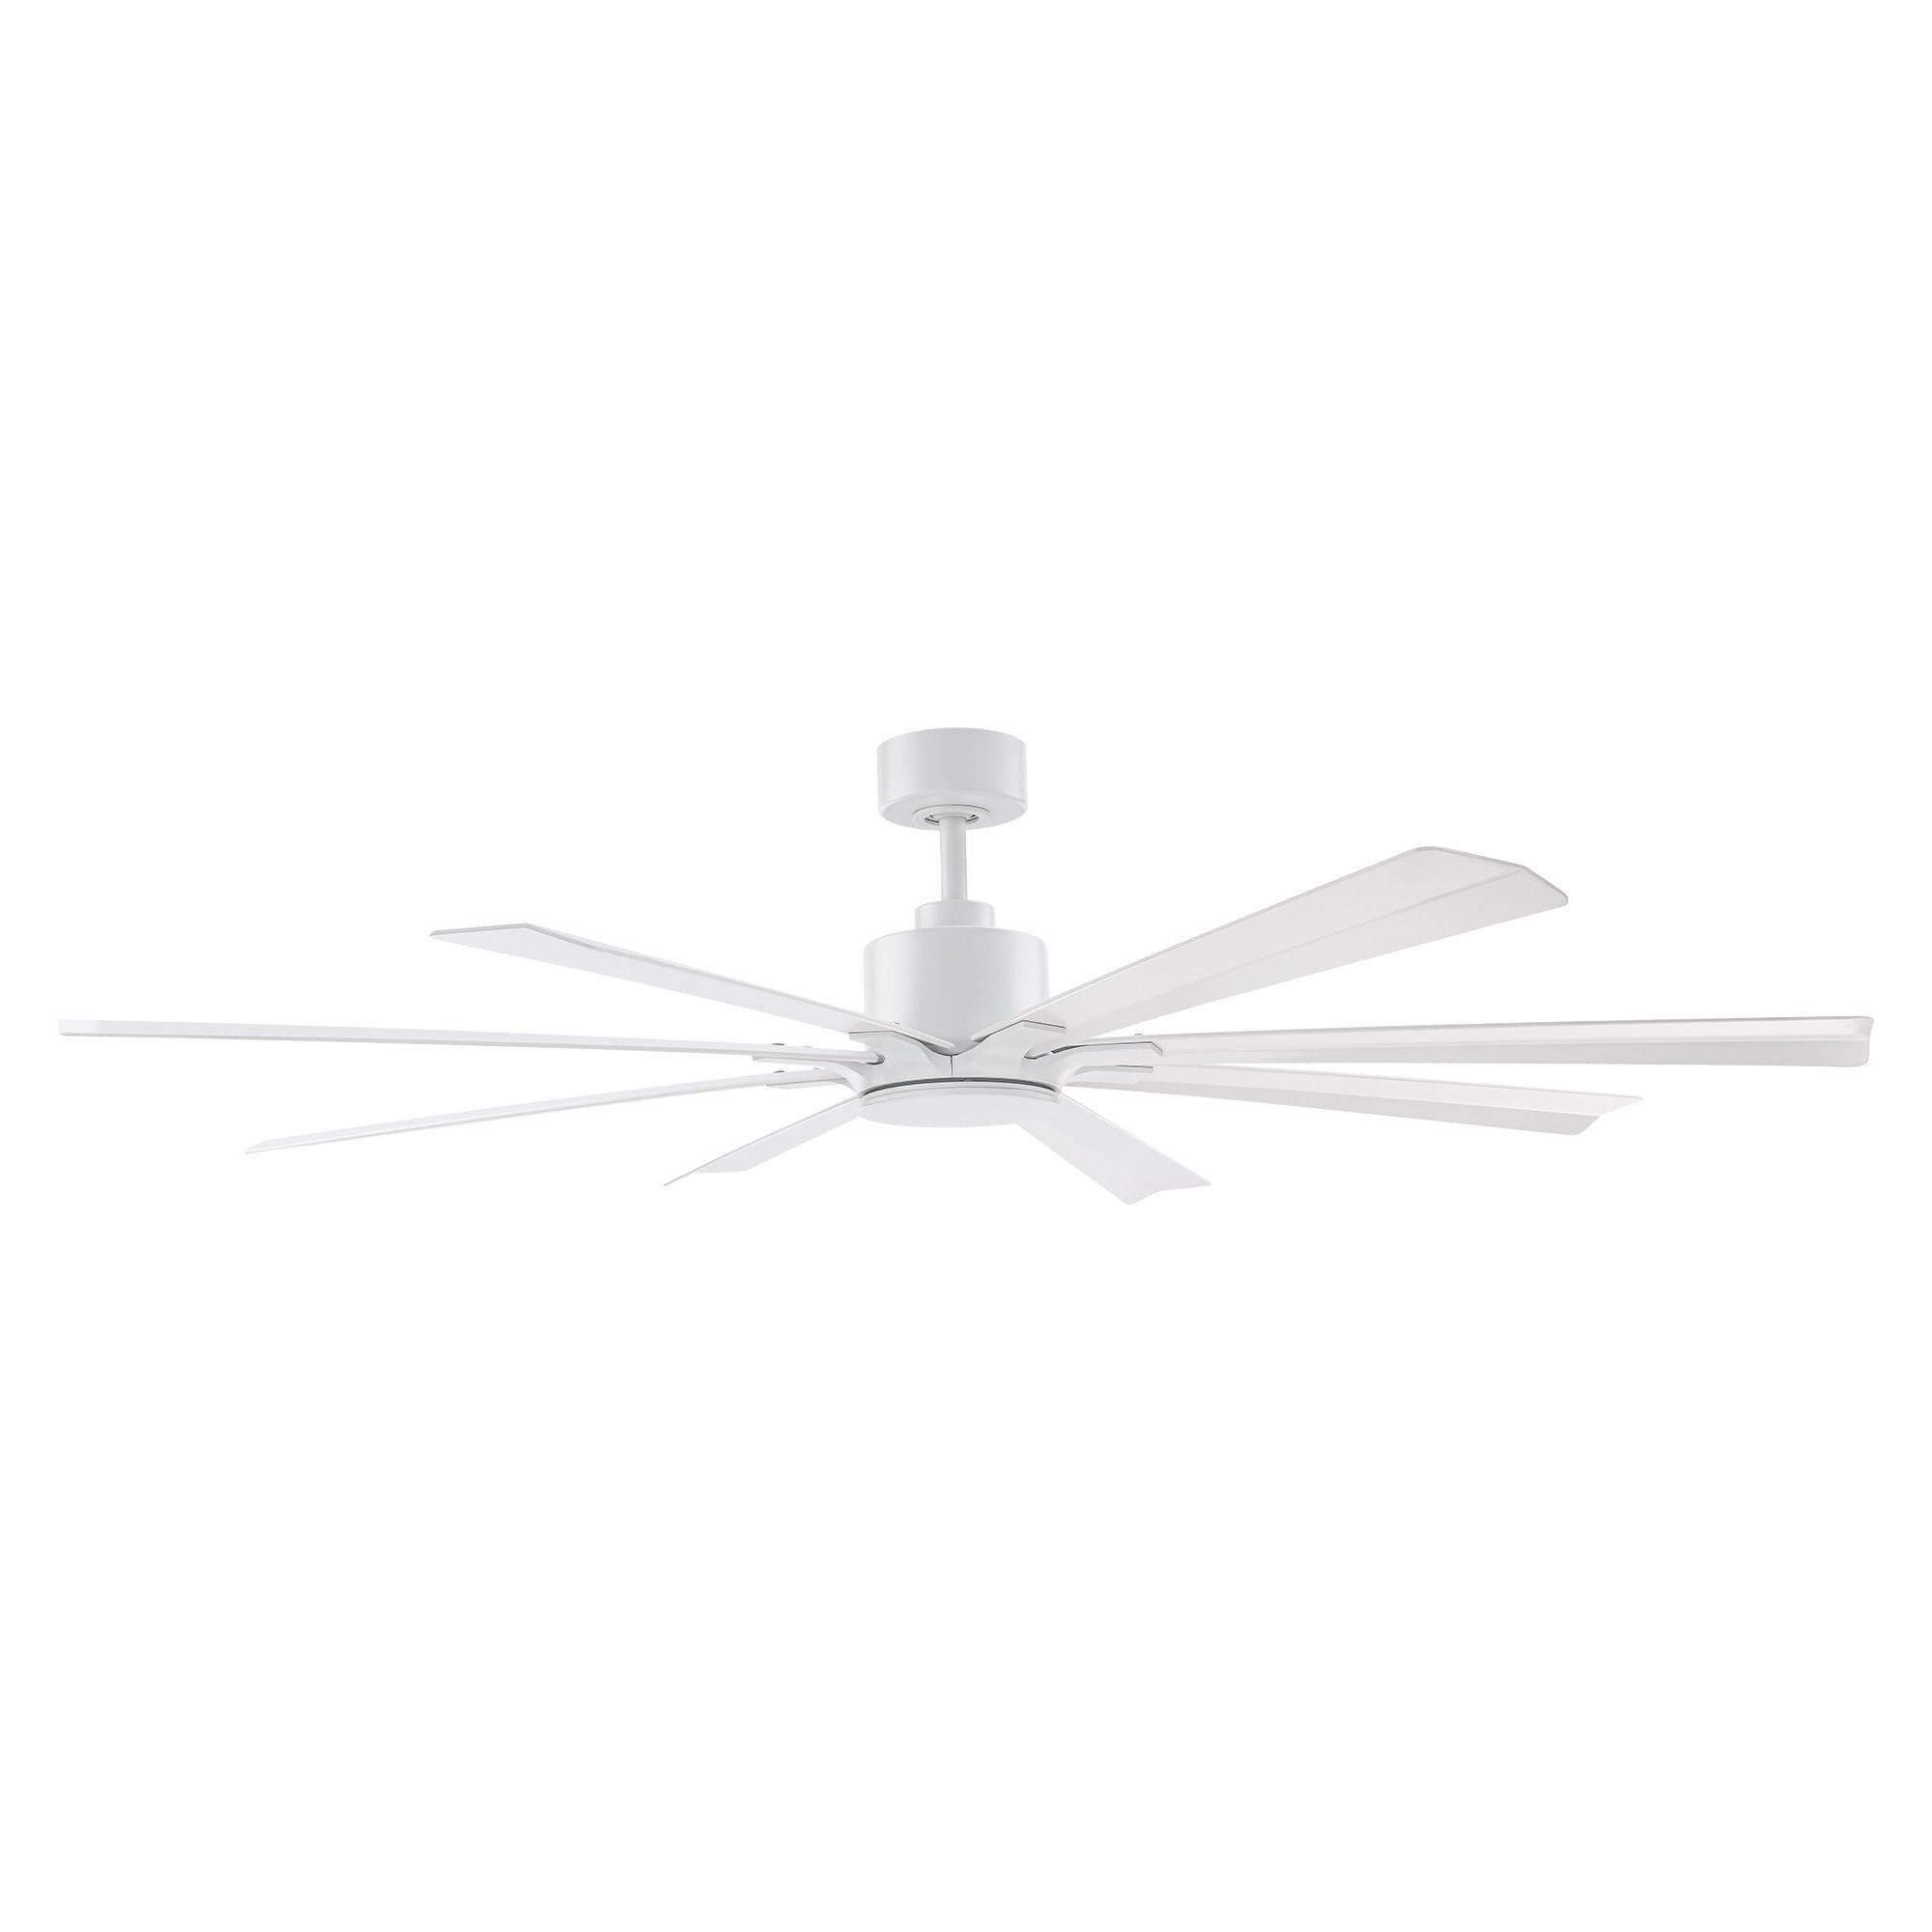 Size Matters Indoor/Outdoor 8-Blade 65" Smart Ceiling Fan